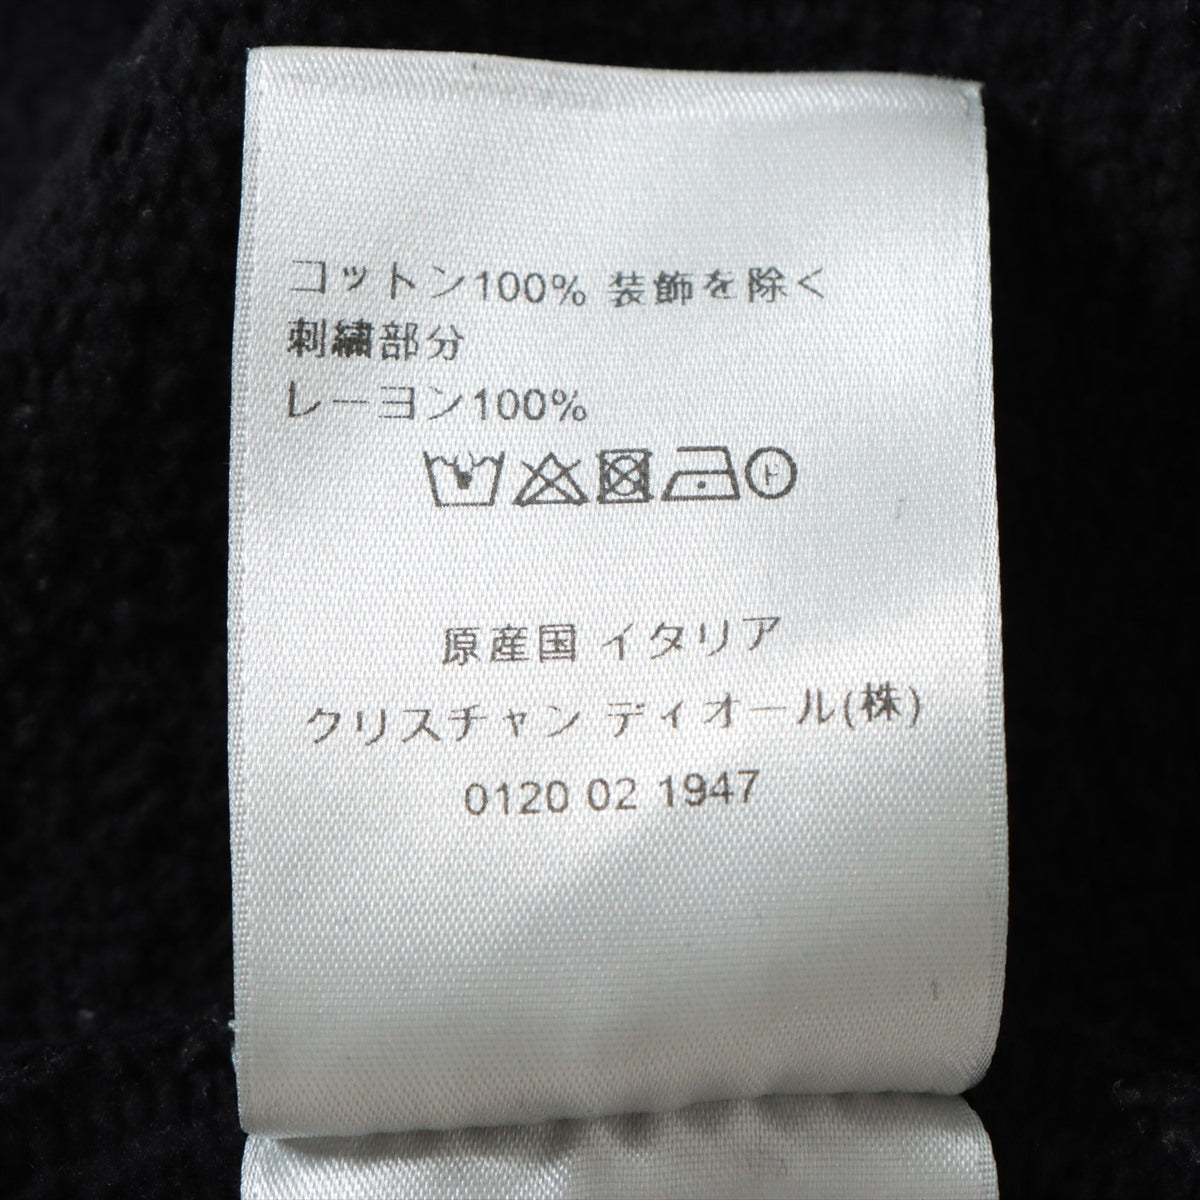 Dior Cotton X Lion Suit XL  Black 113J699A0531